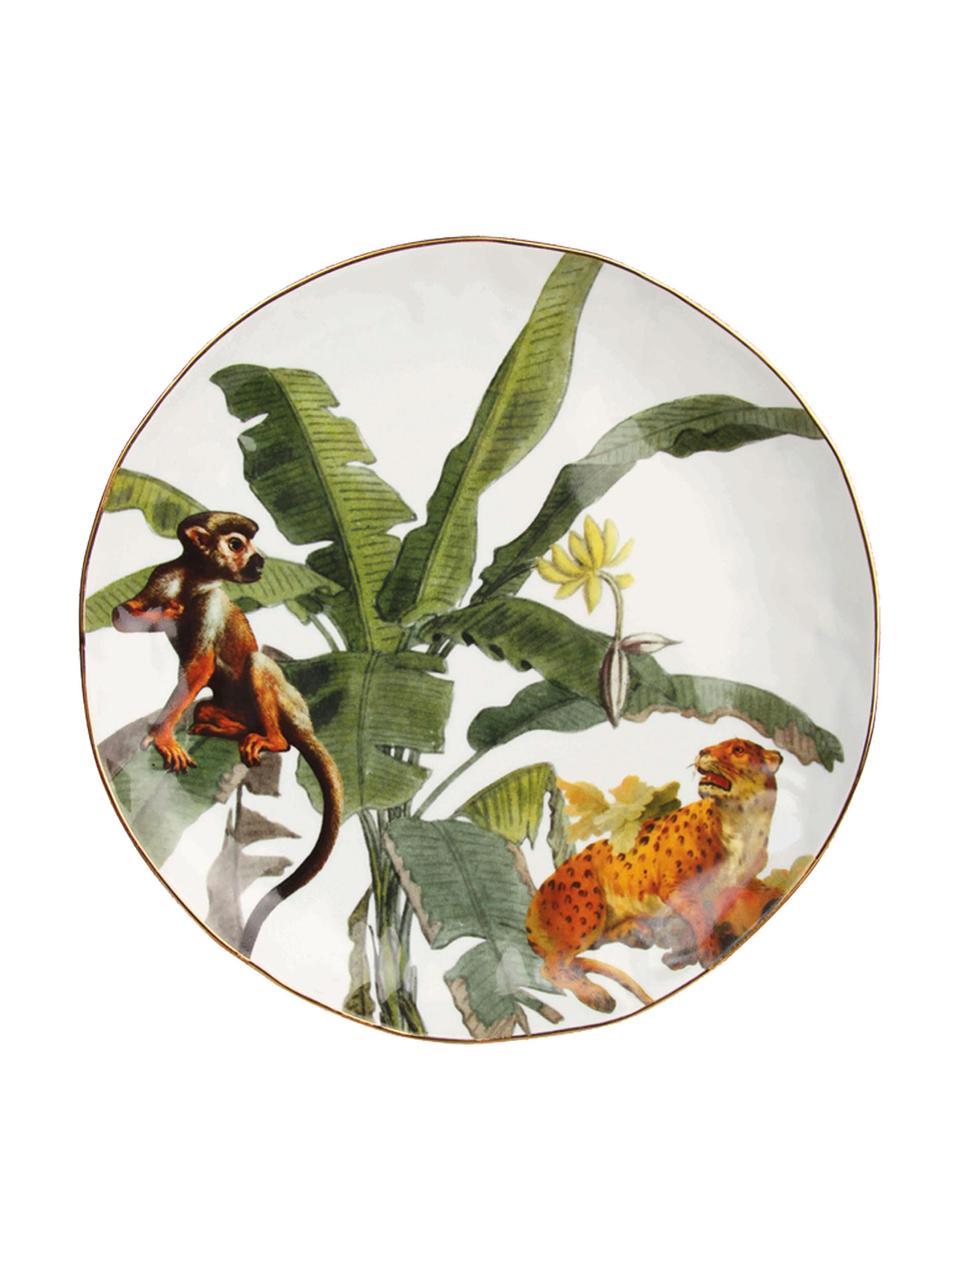 Frühstücksteller Animaux mit Goldrand und tropischen Motiven, 4er-Set, Porzellan, Mehrfarbig, Ø 20 cm